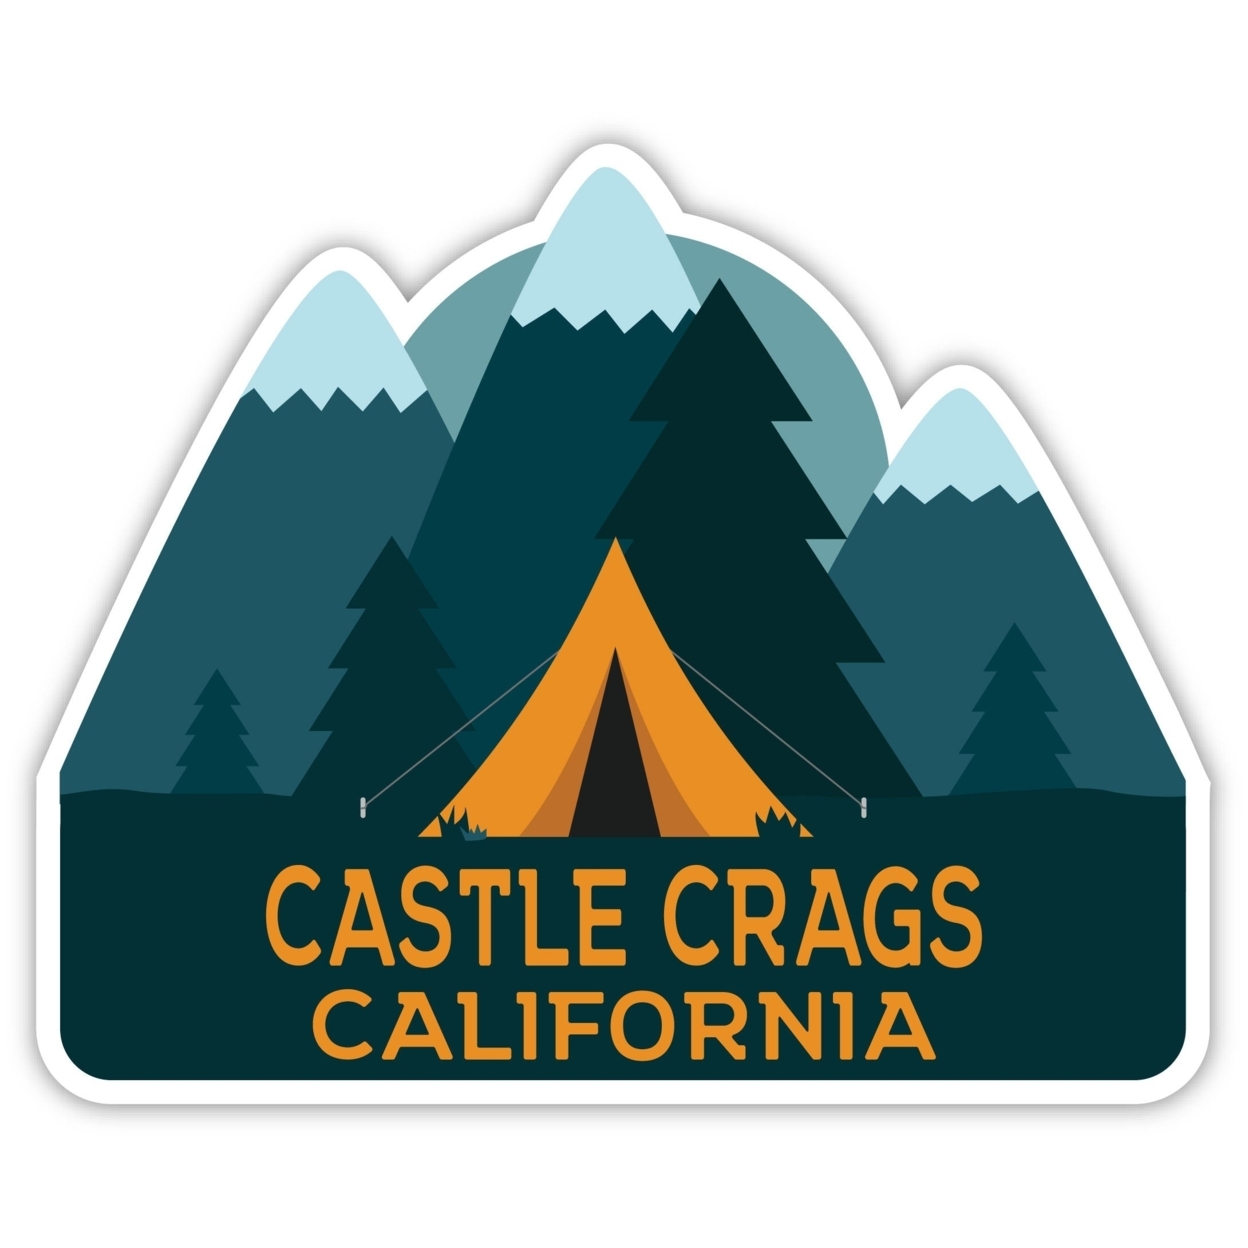 Castle Crags California Souvenir Decorative Stickers (Choose Theme And Size) - Single Unit, 10-Inch, Tent